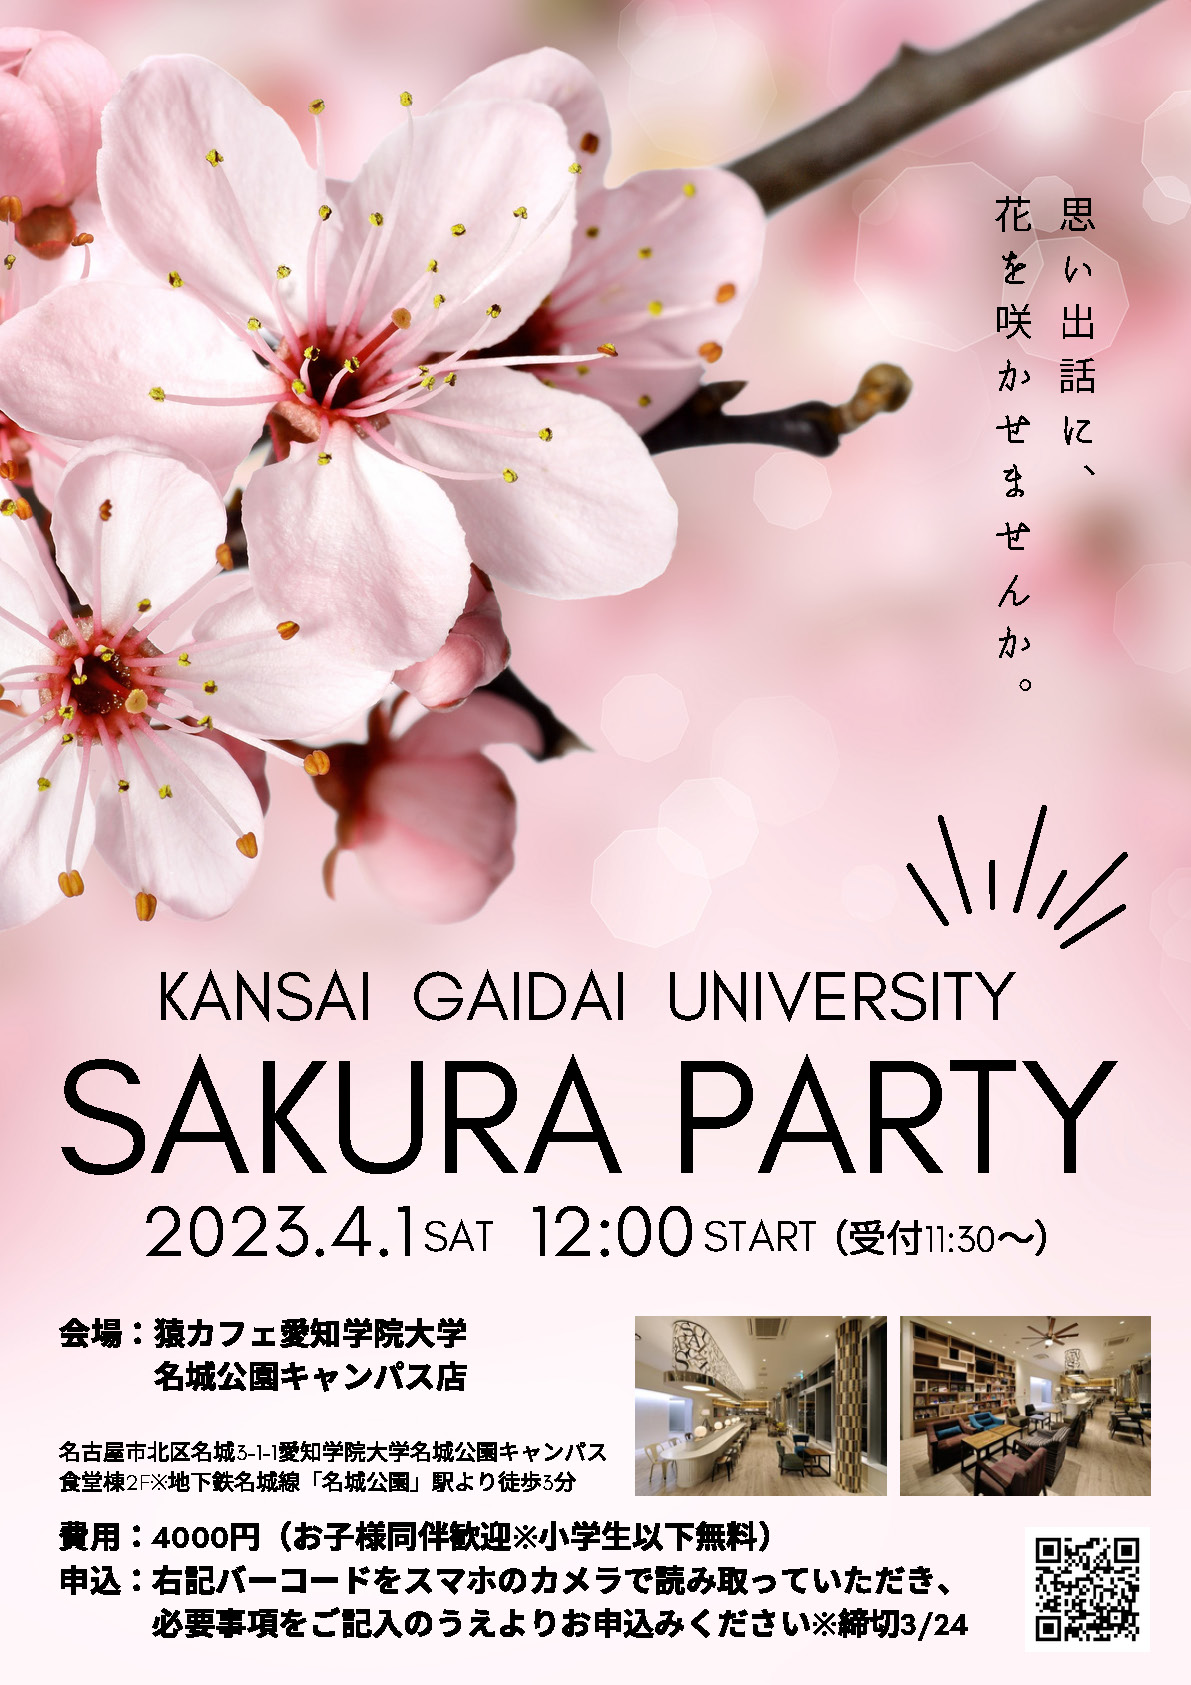 中部支部主催「SAKURA PARTY 2023」開催のお知らせ